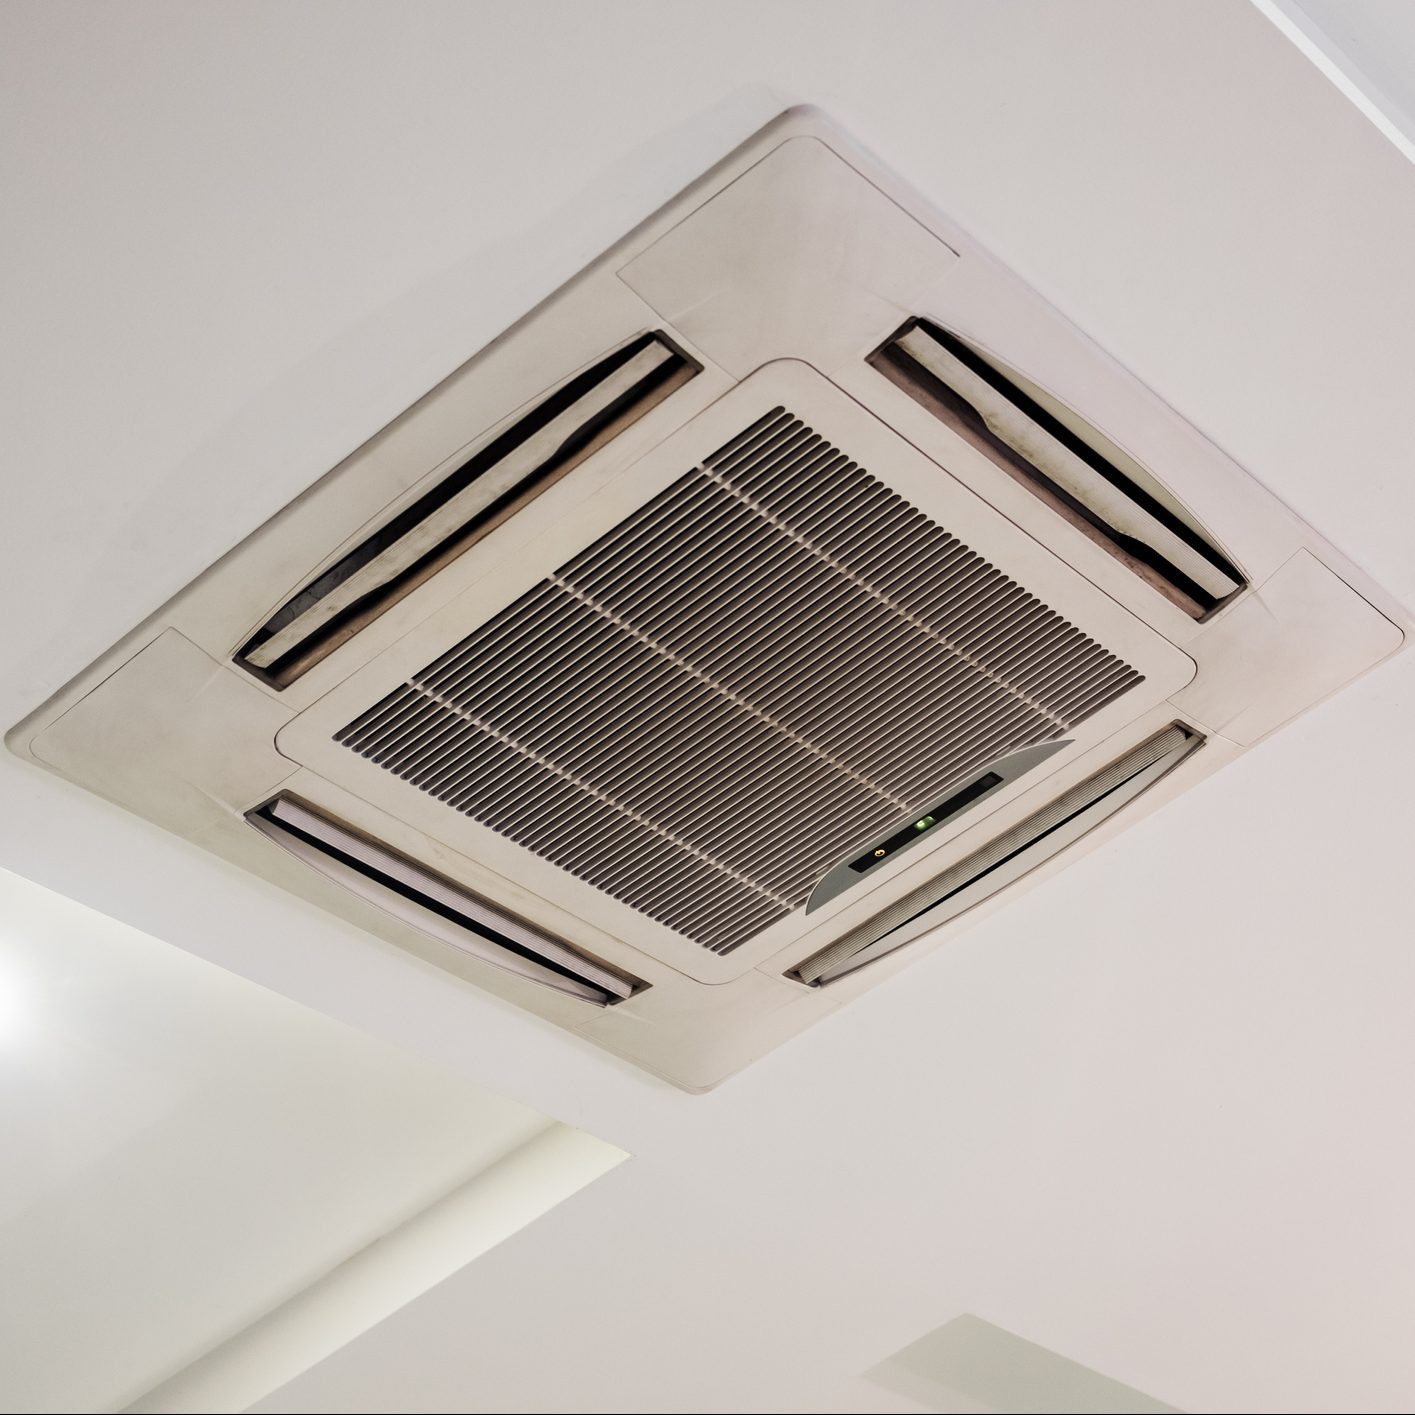 Ceiling recessed air conditioner